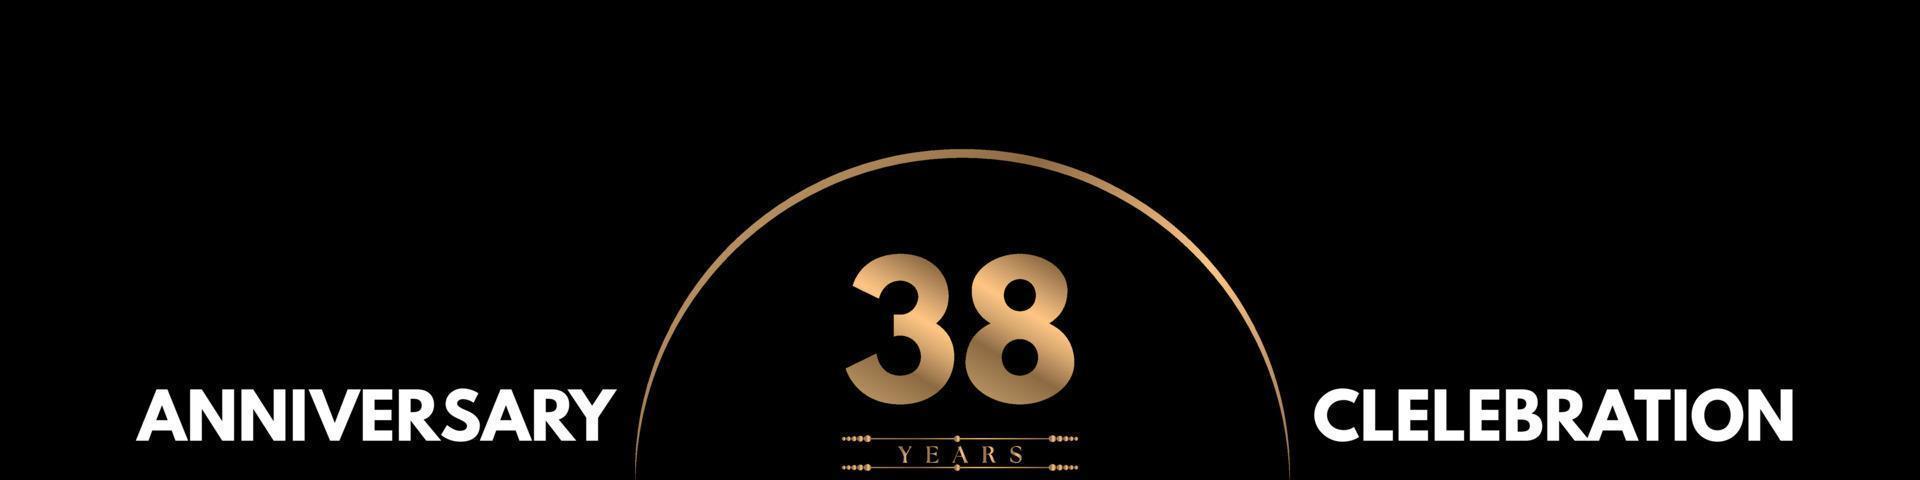 Celebración del aniversario de 38 años con un elegante número aislado en el fondo negro. diseño vectorial para tarjeta de felicitación, fiesta de cumpleaños, boda, fiesta, ceremonia, tarjeta de invitación. vector